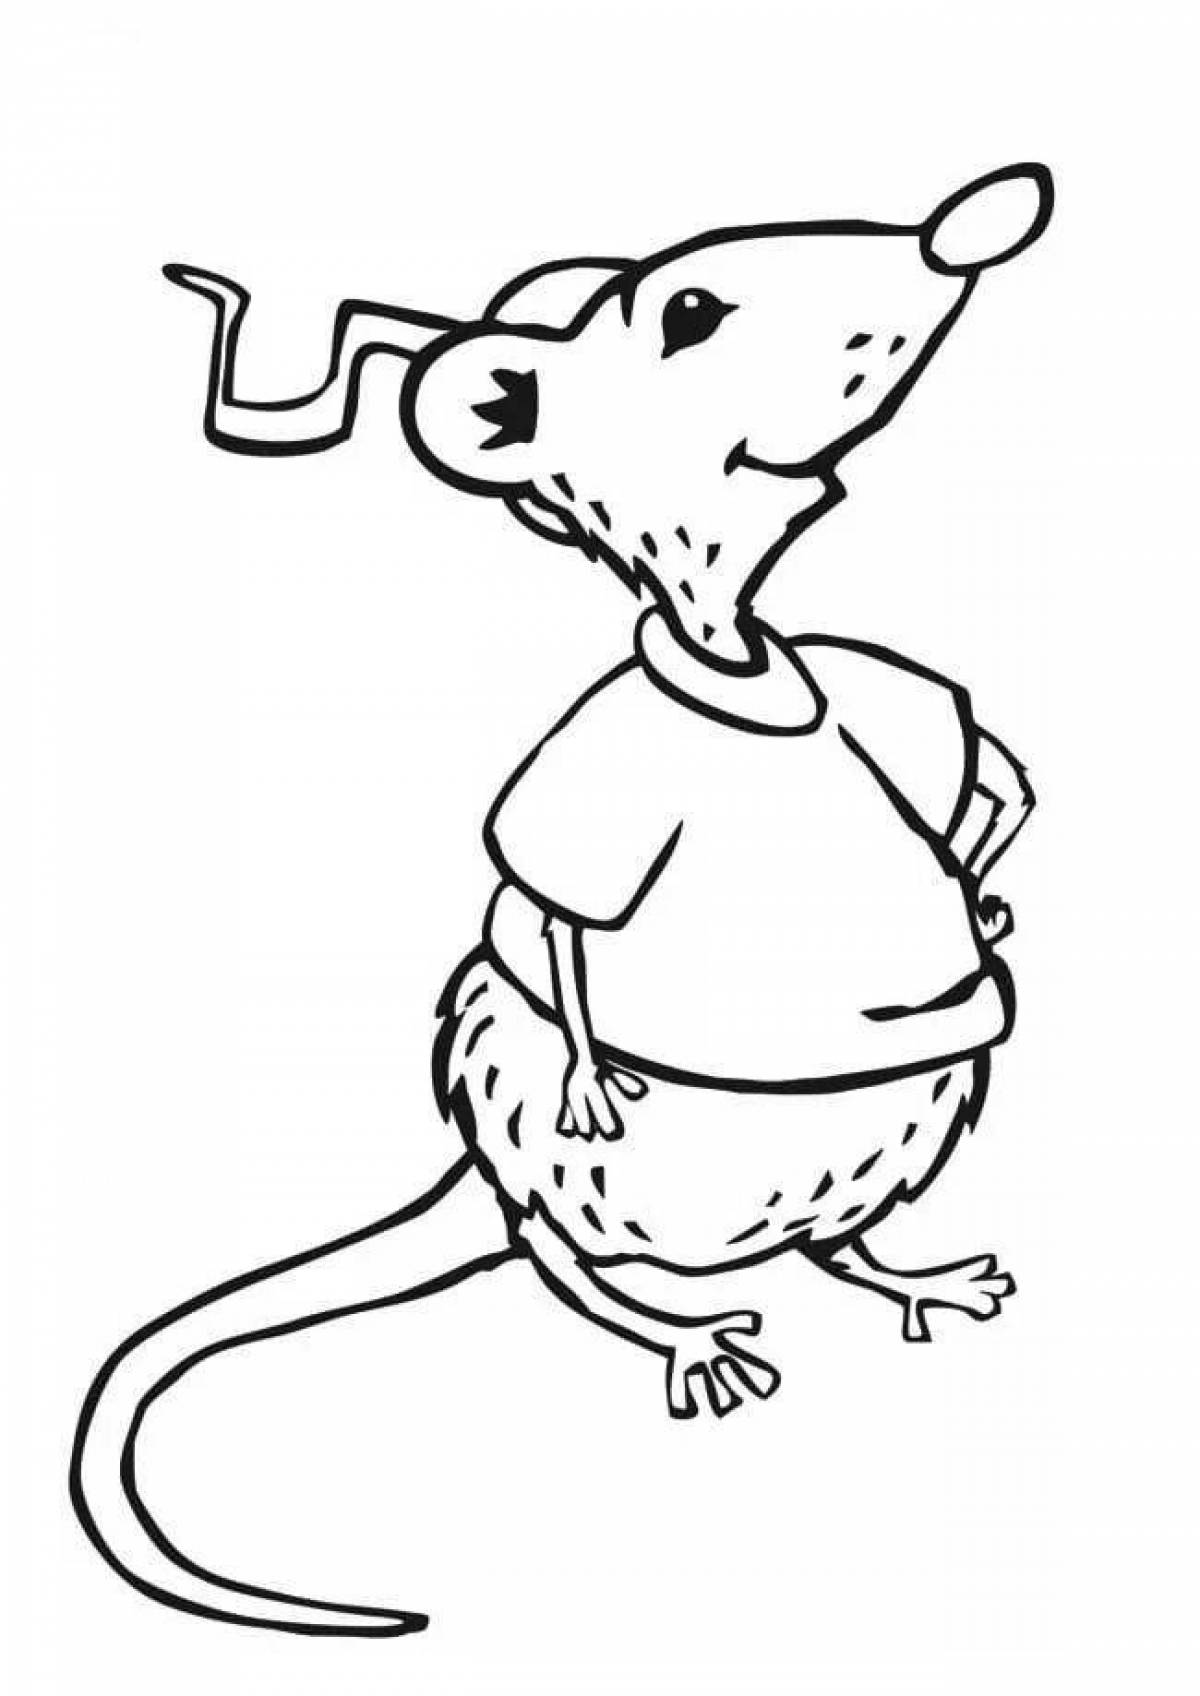 Colored rat lariska coloring book